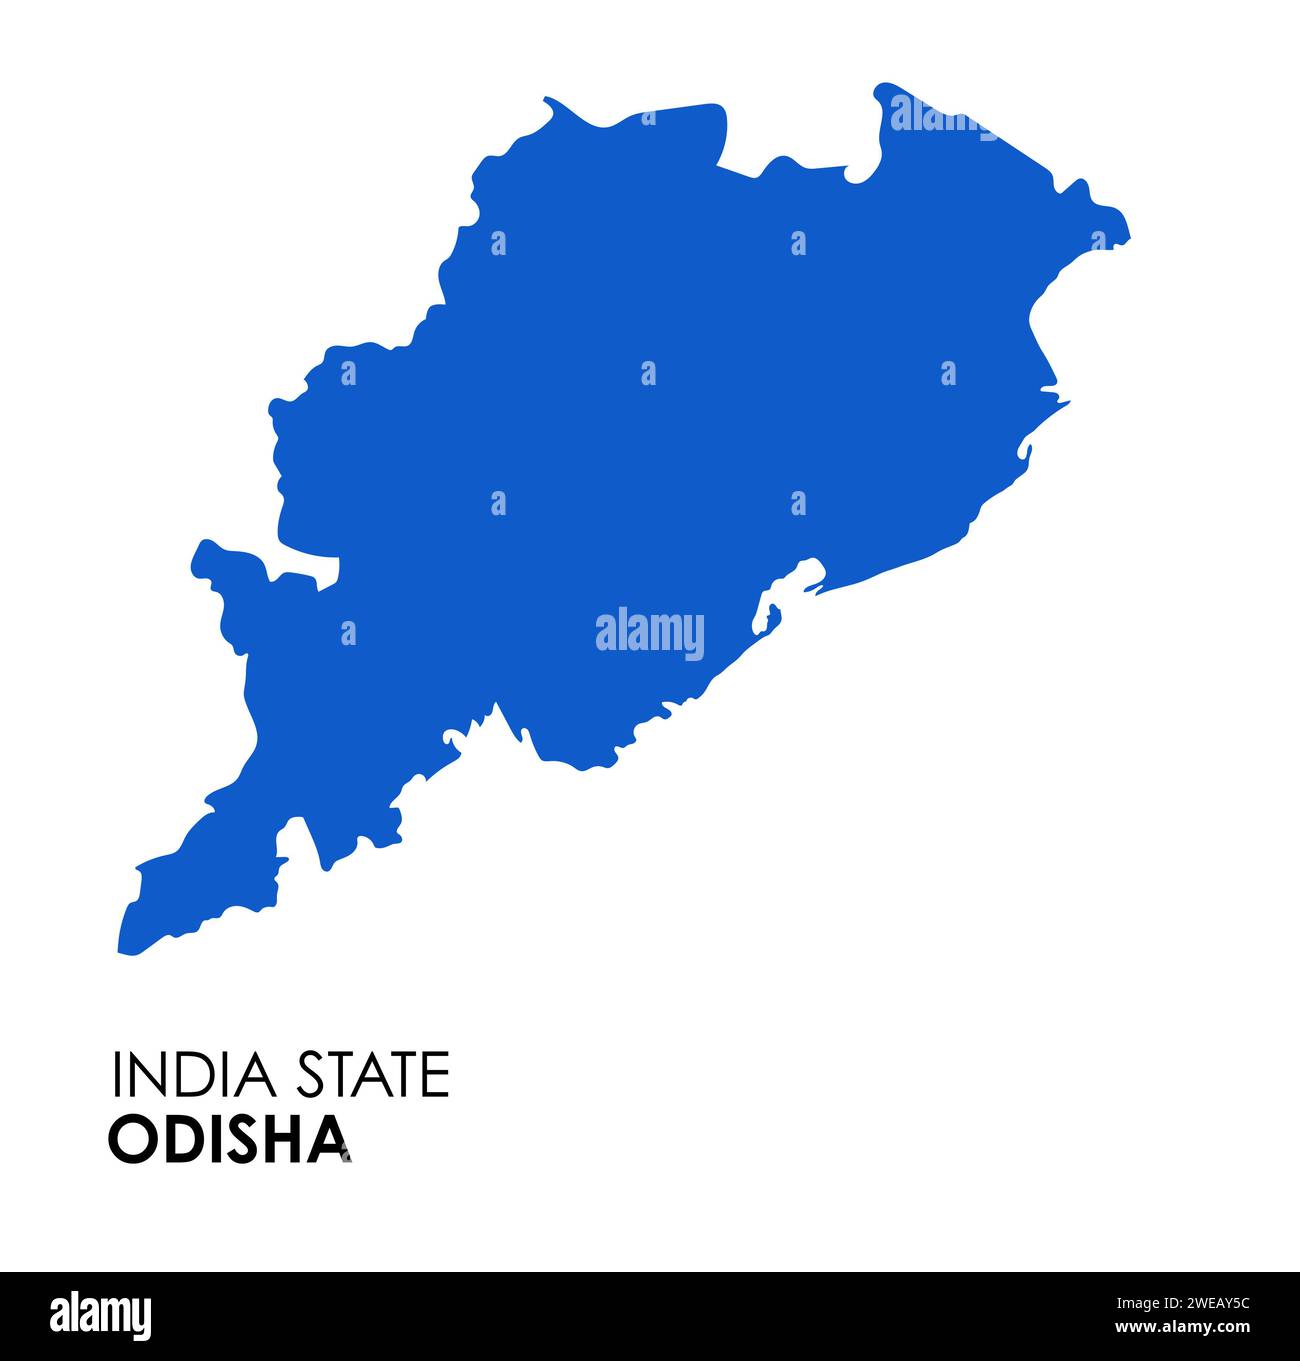 Carte Odisha de l'état indien. Illustration vectorielle de carte Odisha. Carte vectorielle Odisha sur fond blanc. Banque D'Images